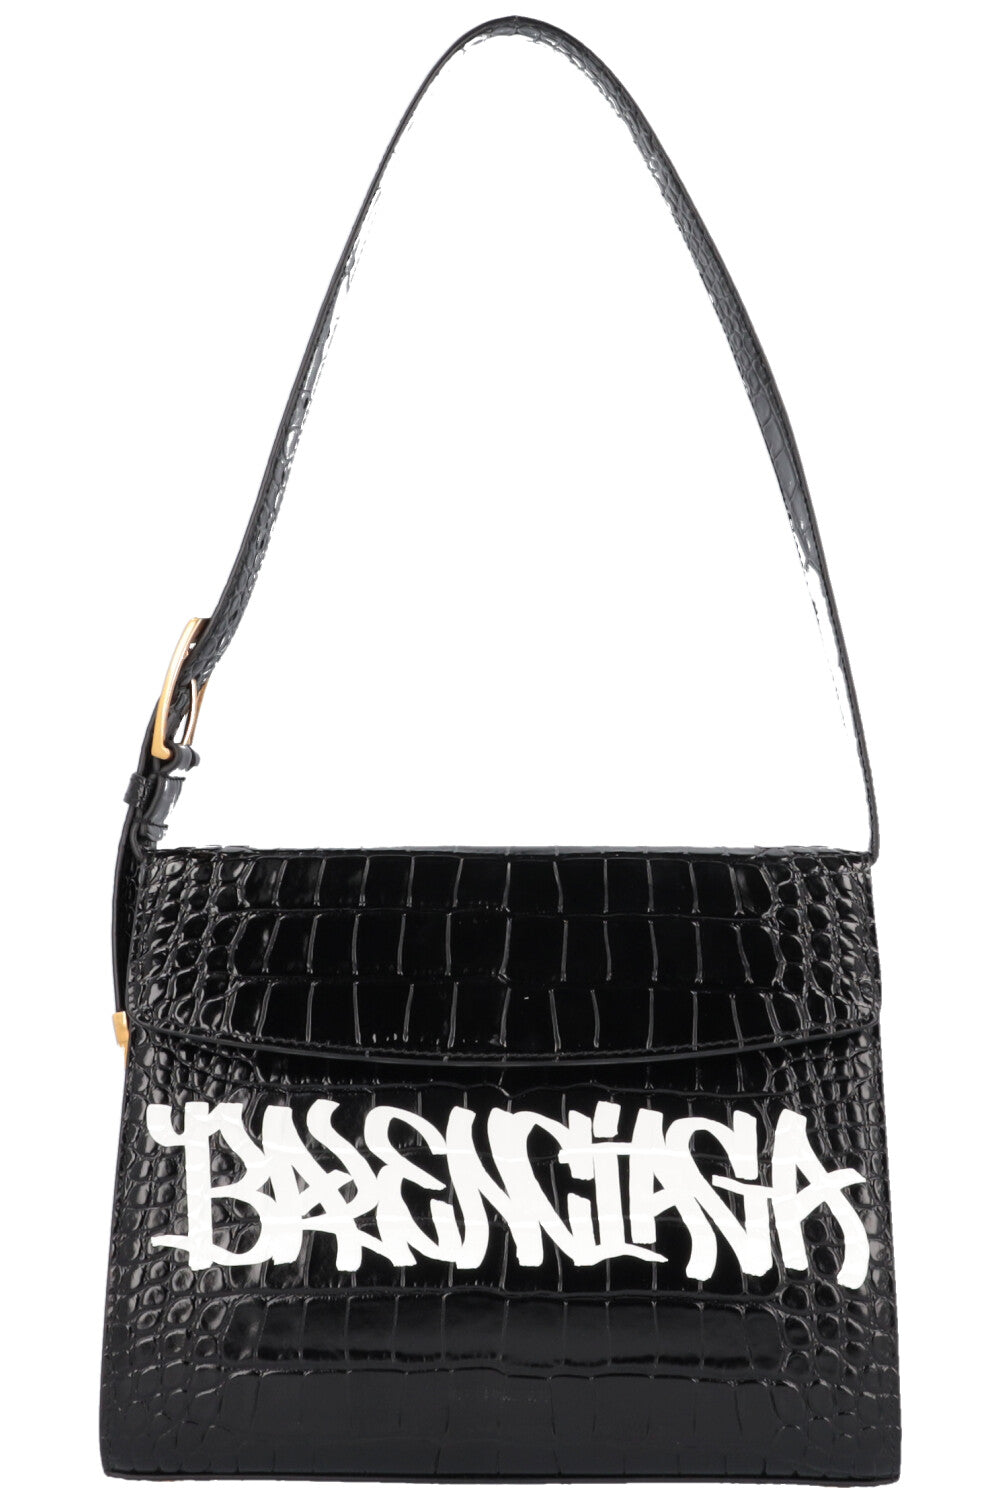 一改高調作風Balenciaga 新季Ghost Bag找不到張揚的設計浮誇滿版的Logo  POPBEE